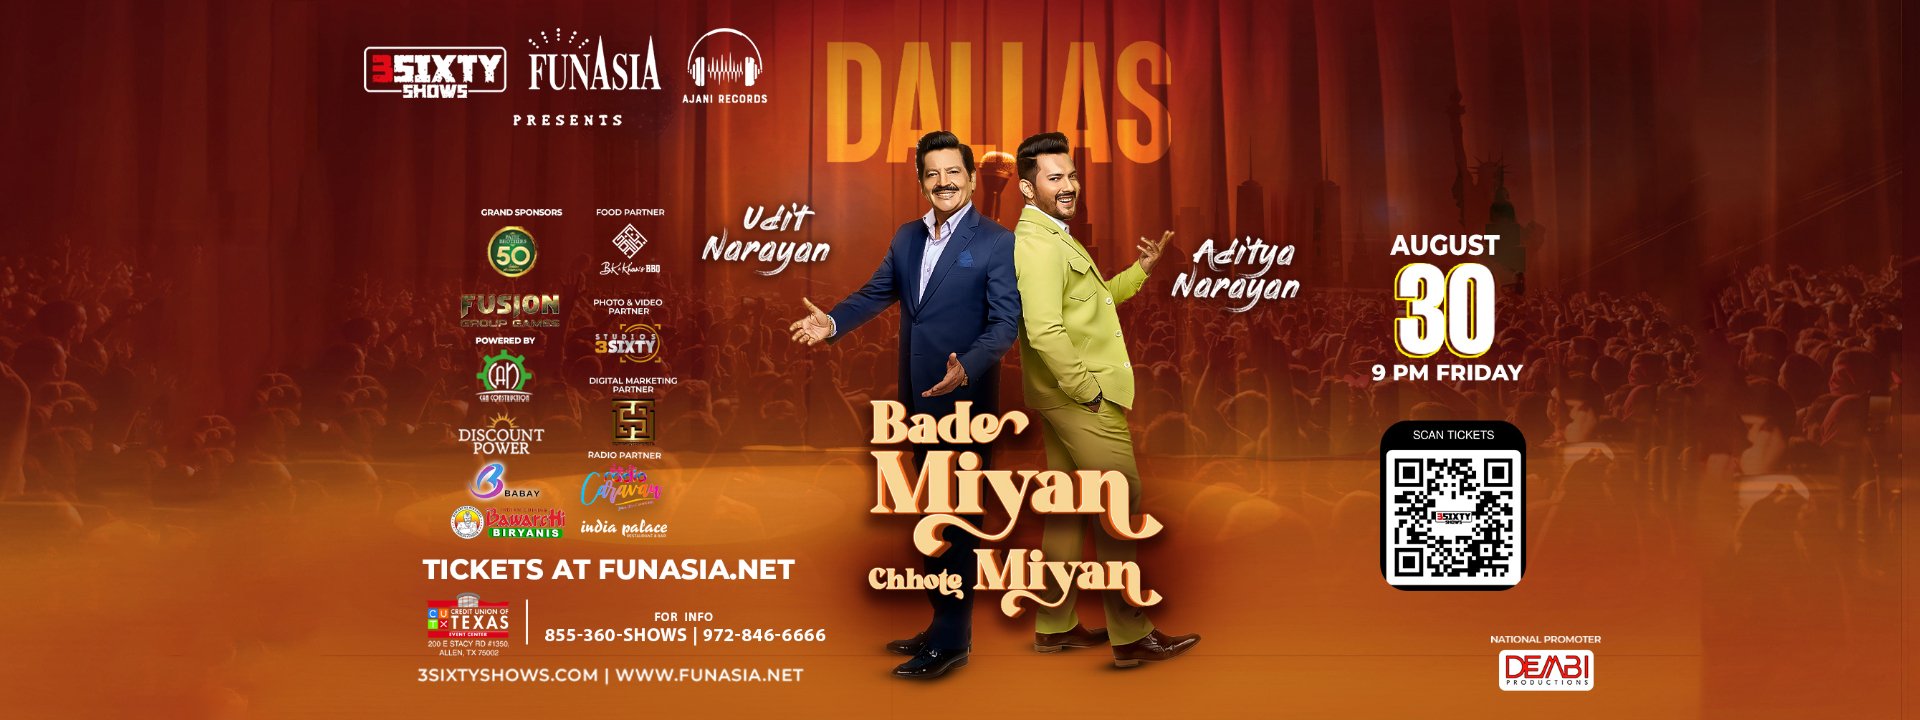 Bade Miyan Chhote Miyan Concert Live In Dallas